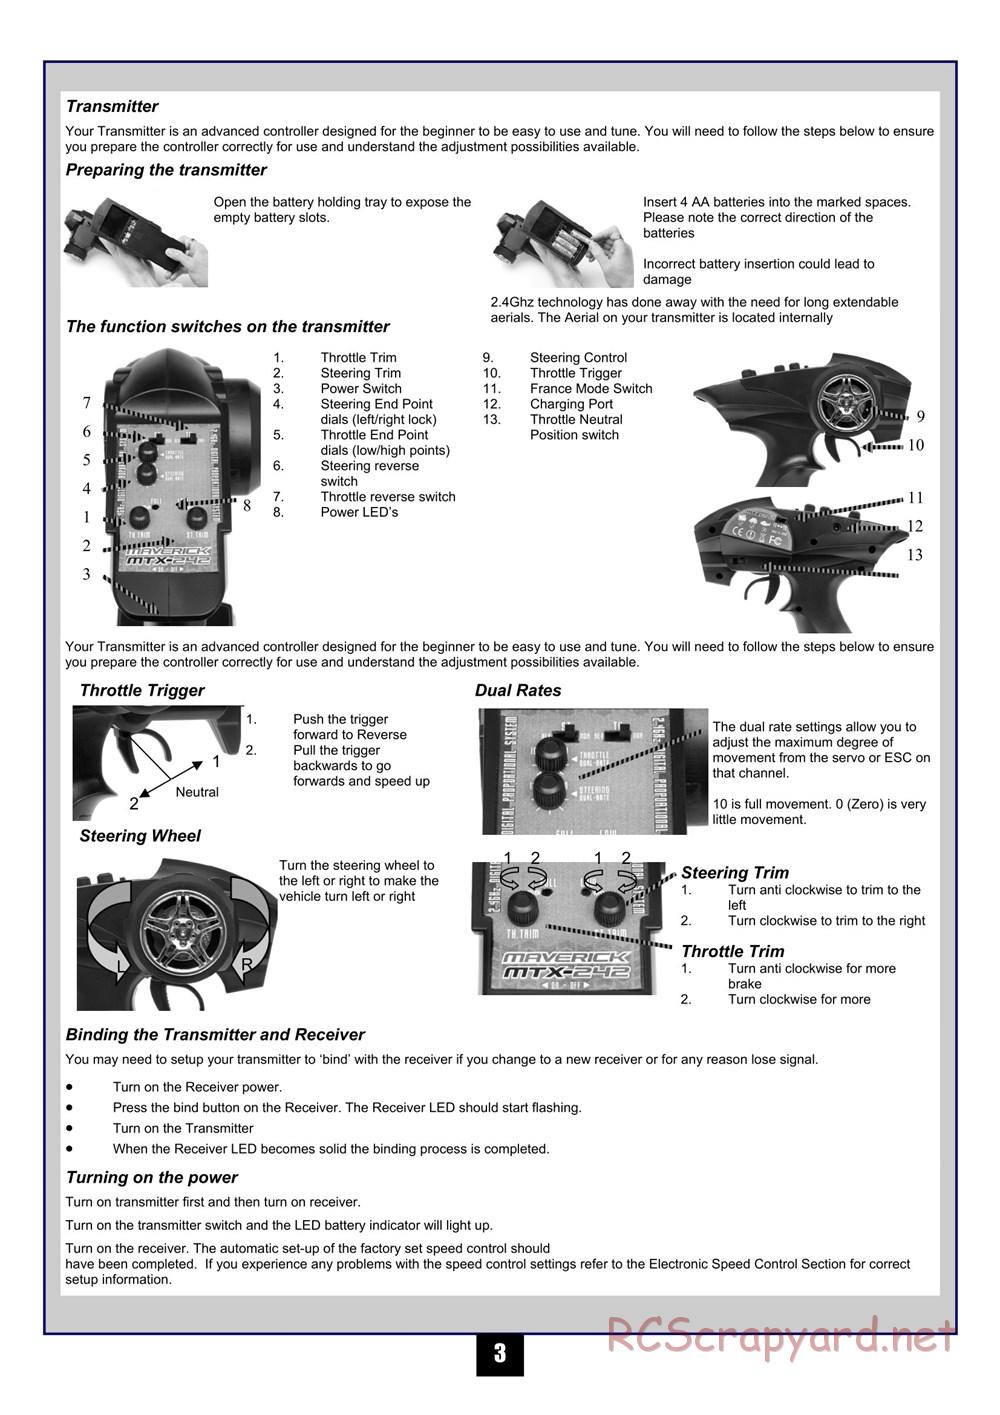 HPI - Maverick Blackout MT - Manual - Page 4